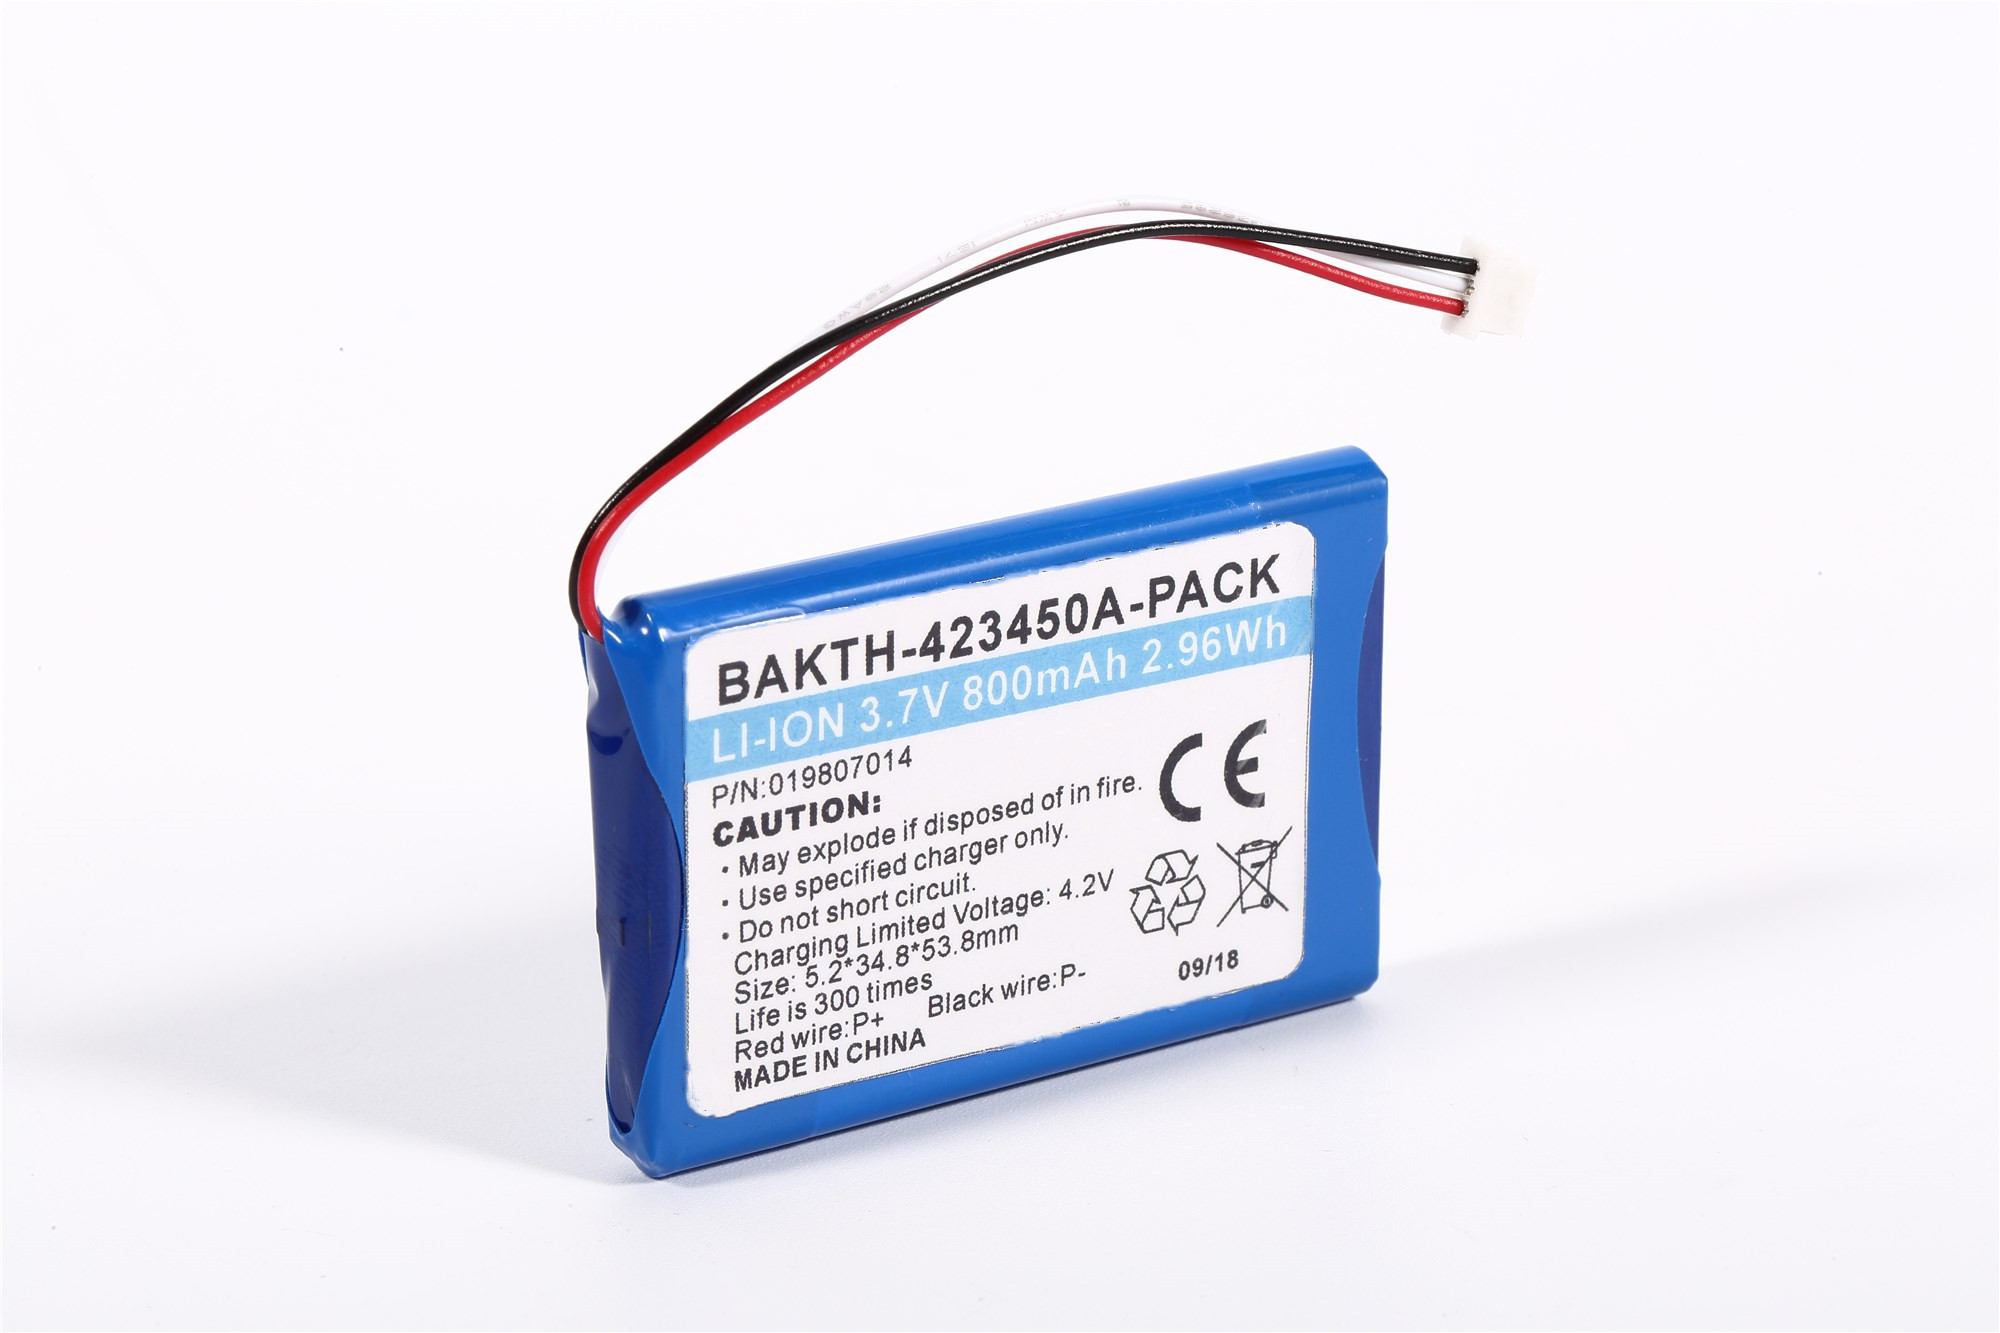 Bateria de íons de lítio BAKTH-423450 PACK 3,7V 800mAH 